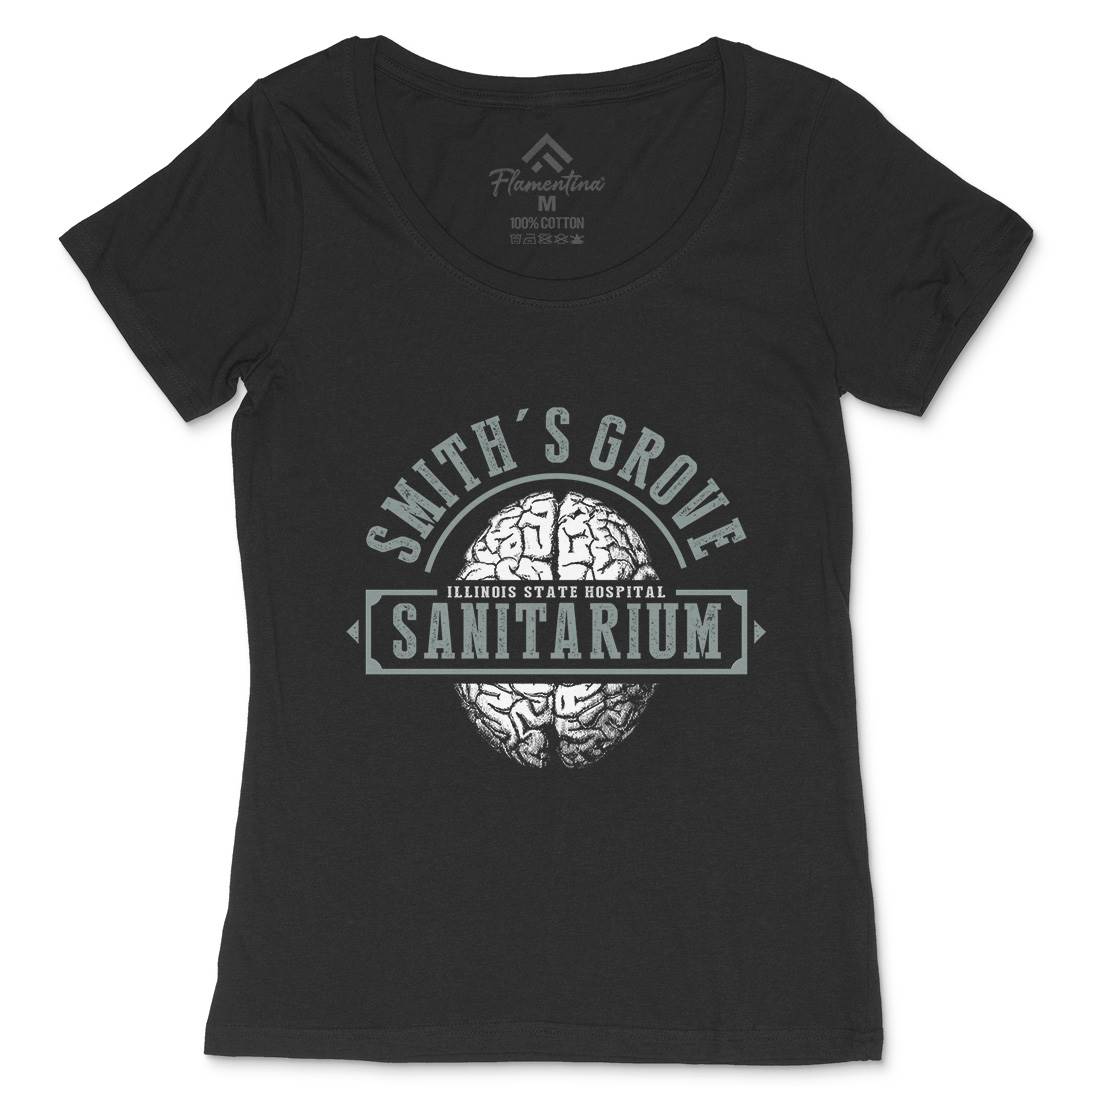 Smiths Grove Womens Scoop Neck T-Shirt Horror D331